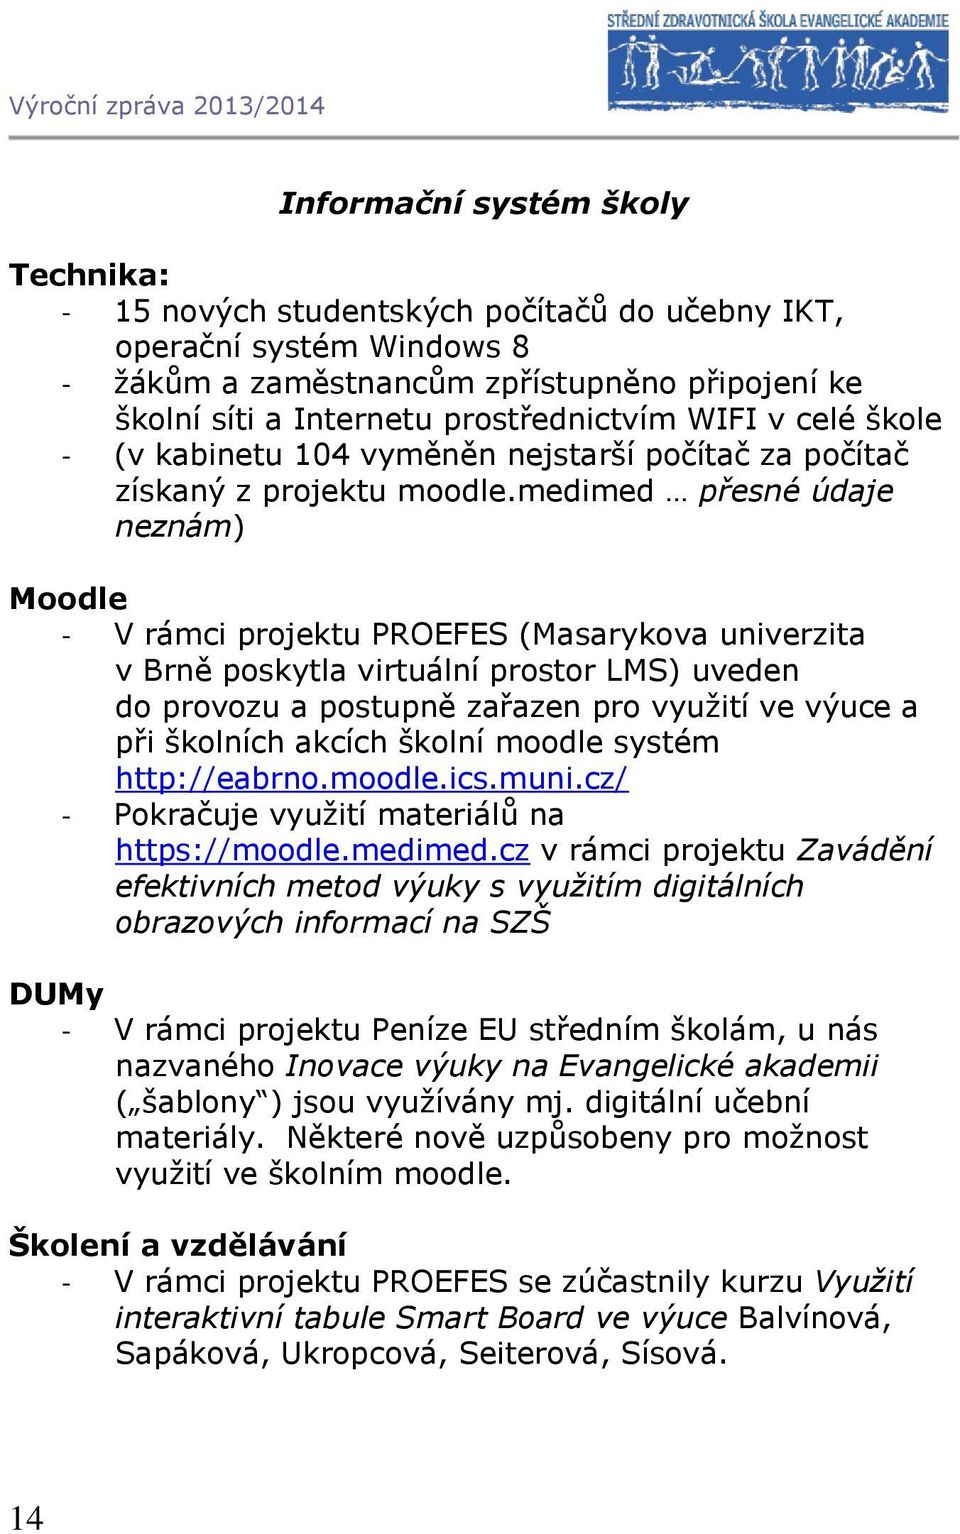 medimed přesné údaje neznám) Moodle - V rámci projektu PROEFES (Masarykova univerzita v Brně poskytla virtuální prostor LMS) uveden do provozu a postupně zařazen pro využití ve výuce a při školních